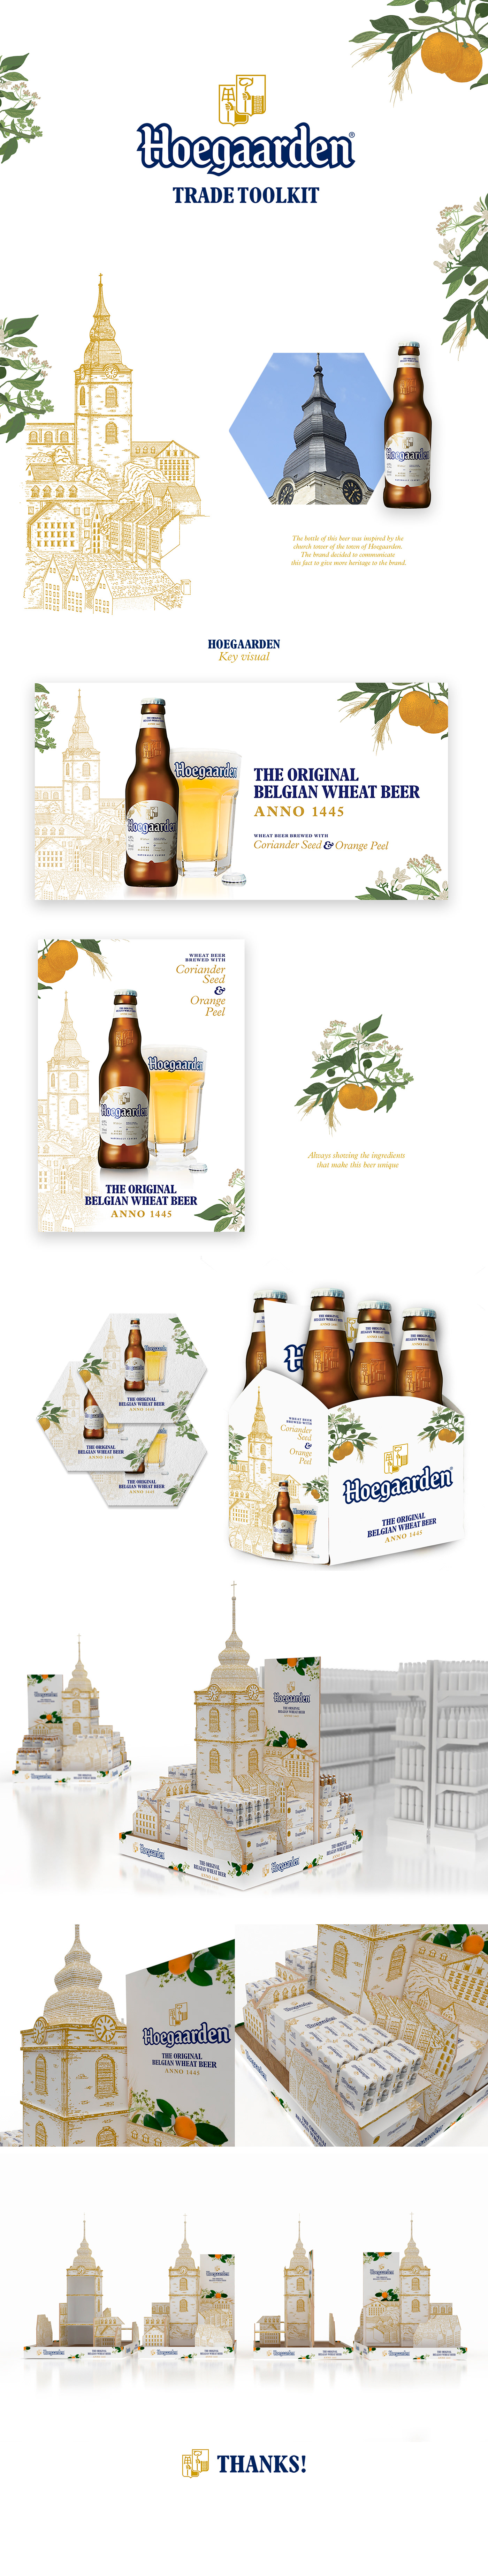 hoegaarden beer toolkit graphic design  ILLUSTRATION  industrial design 